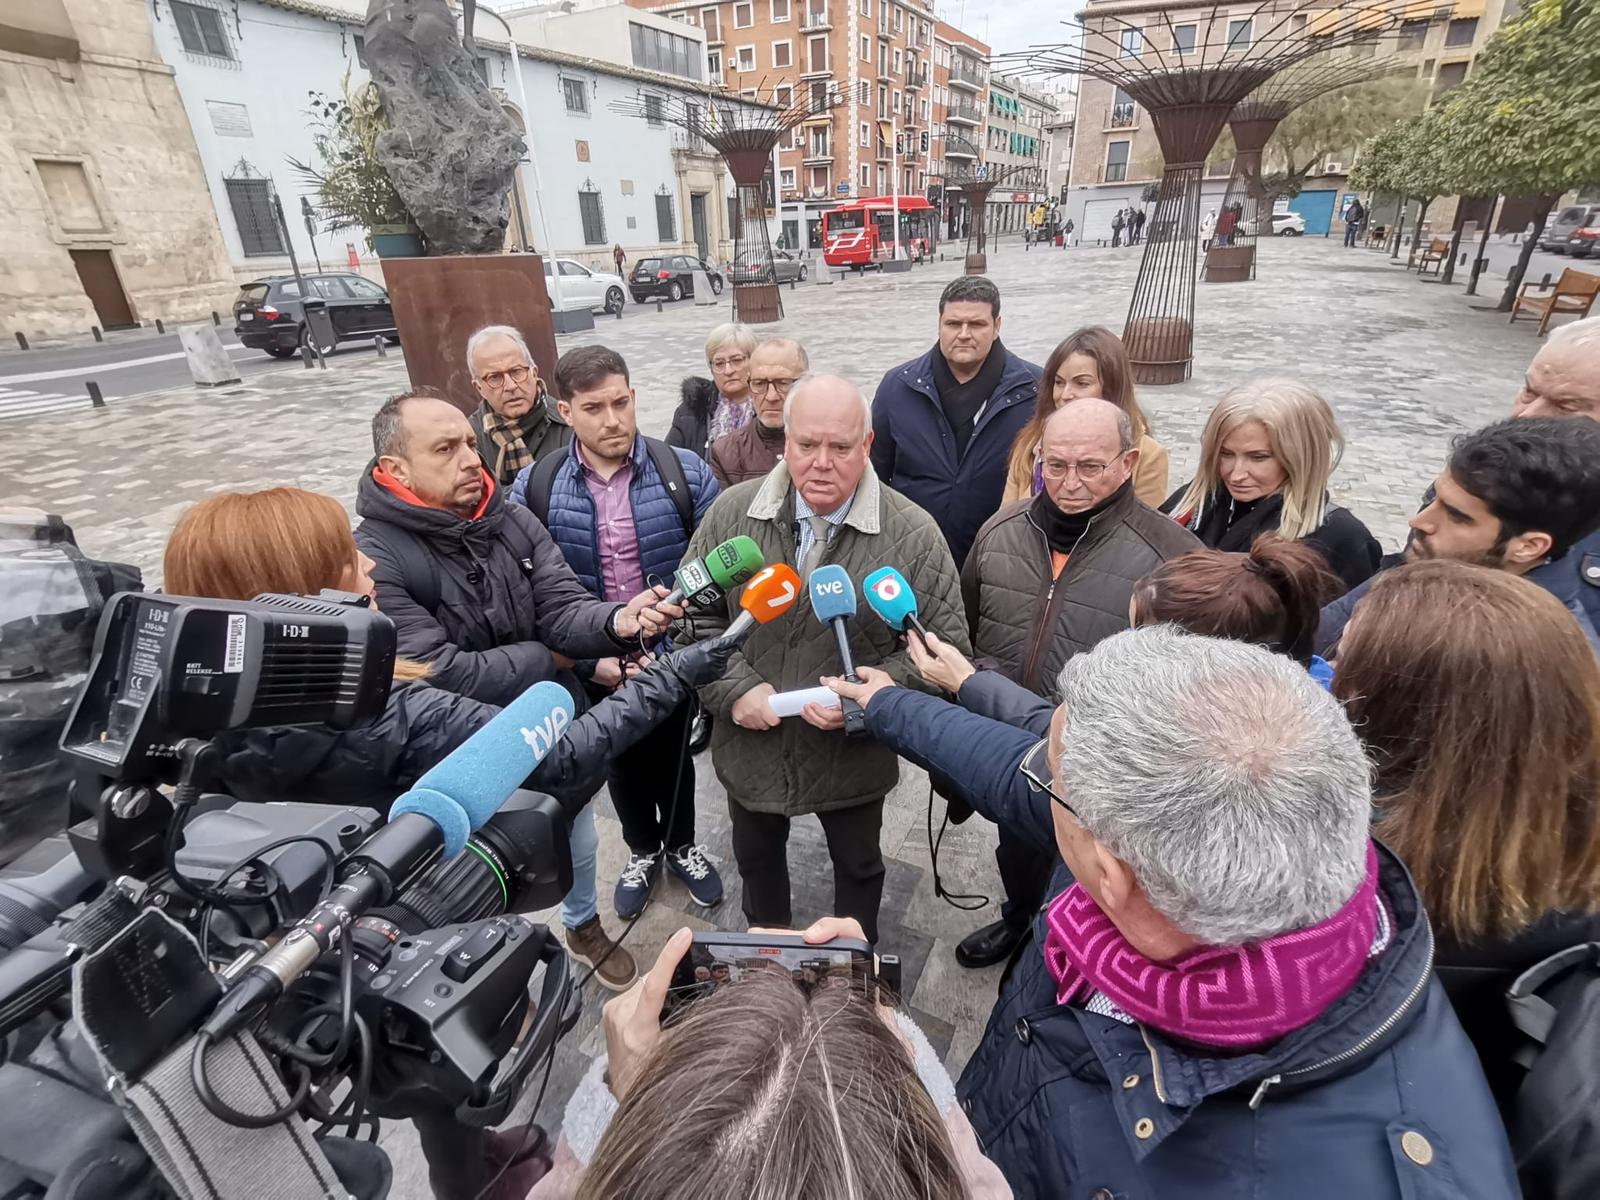 El PP propone la convocatoria urgente de la Junta Local de Seguridad por el incremento descontrolado de los delitos en Murcia